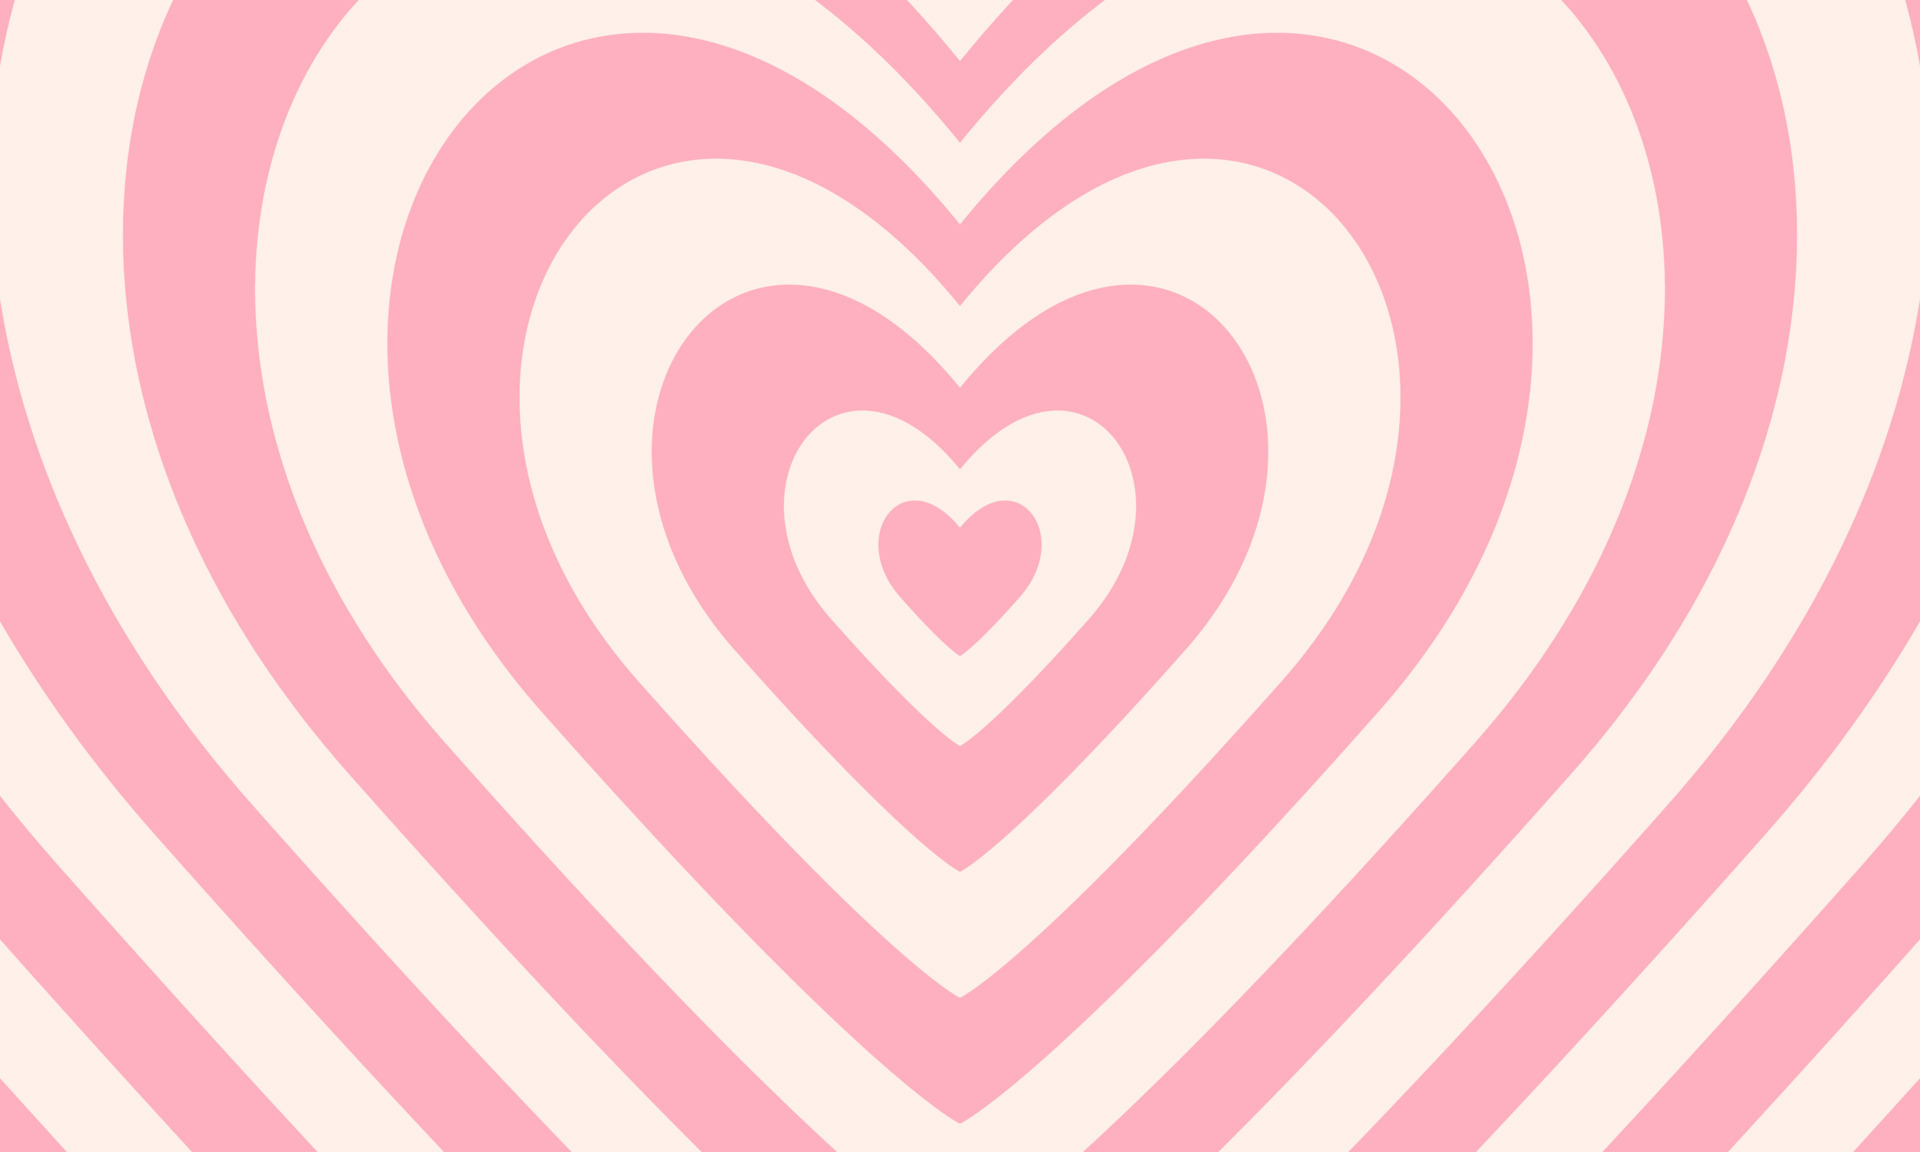 Nếu bạn muốn tìm kiếm một hình nền lãng mạn và đầy cảm hứng, thì đường hầm trái tim đồng tâm trong phong cách Y2K chắc chắn sẽ làm bạn say mê. Với màu hồng nhạt, trắng tinh khôi và yếu tố đường hầm tao nhã, hình nền này sẽ cho bạn cảm giác thoải mái và tĩnh lặng.